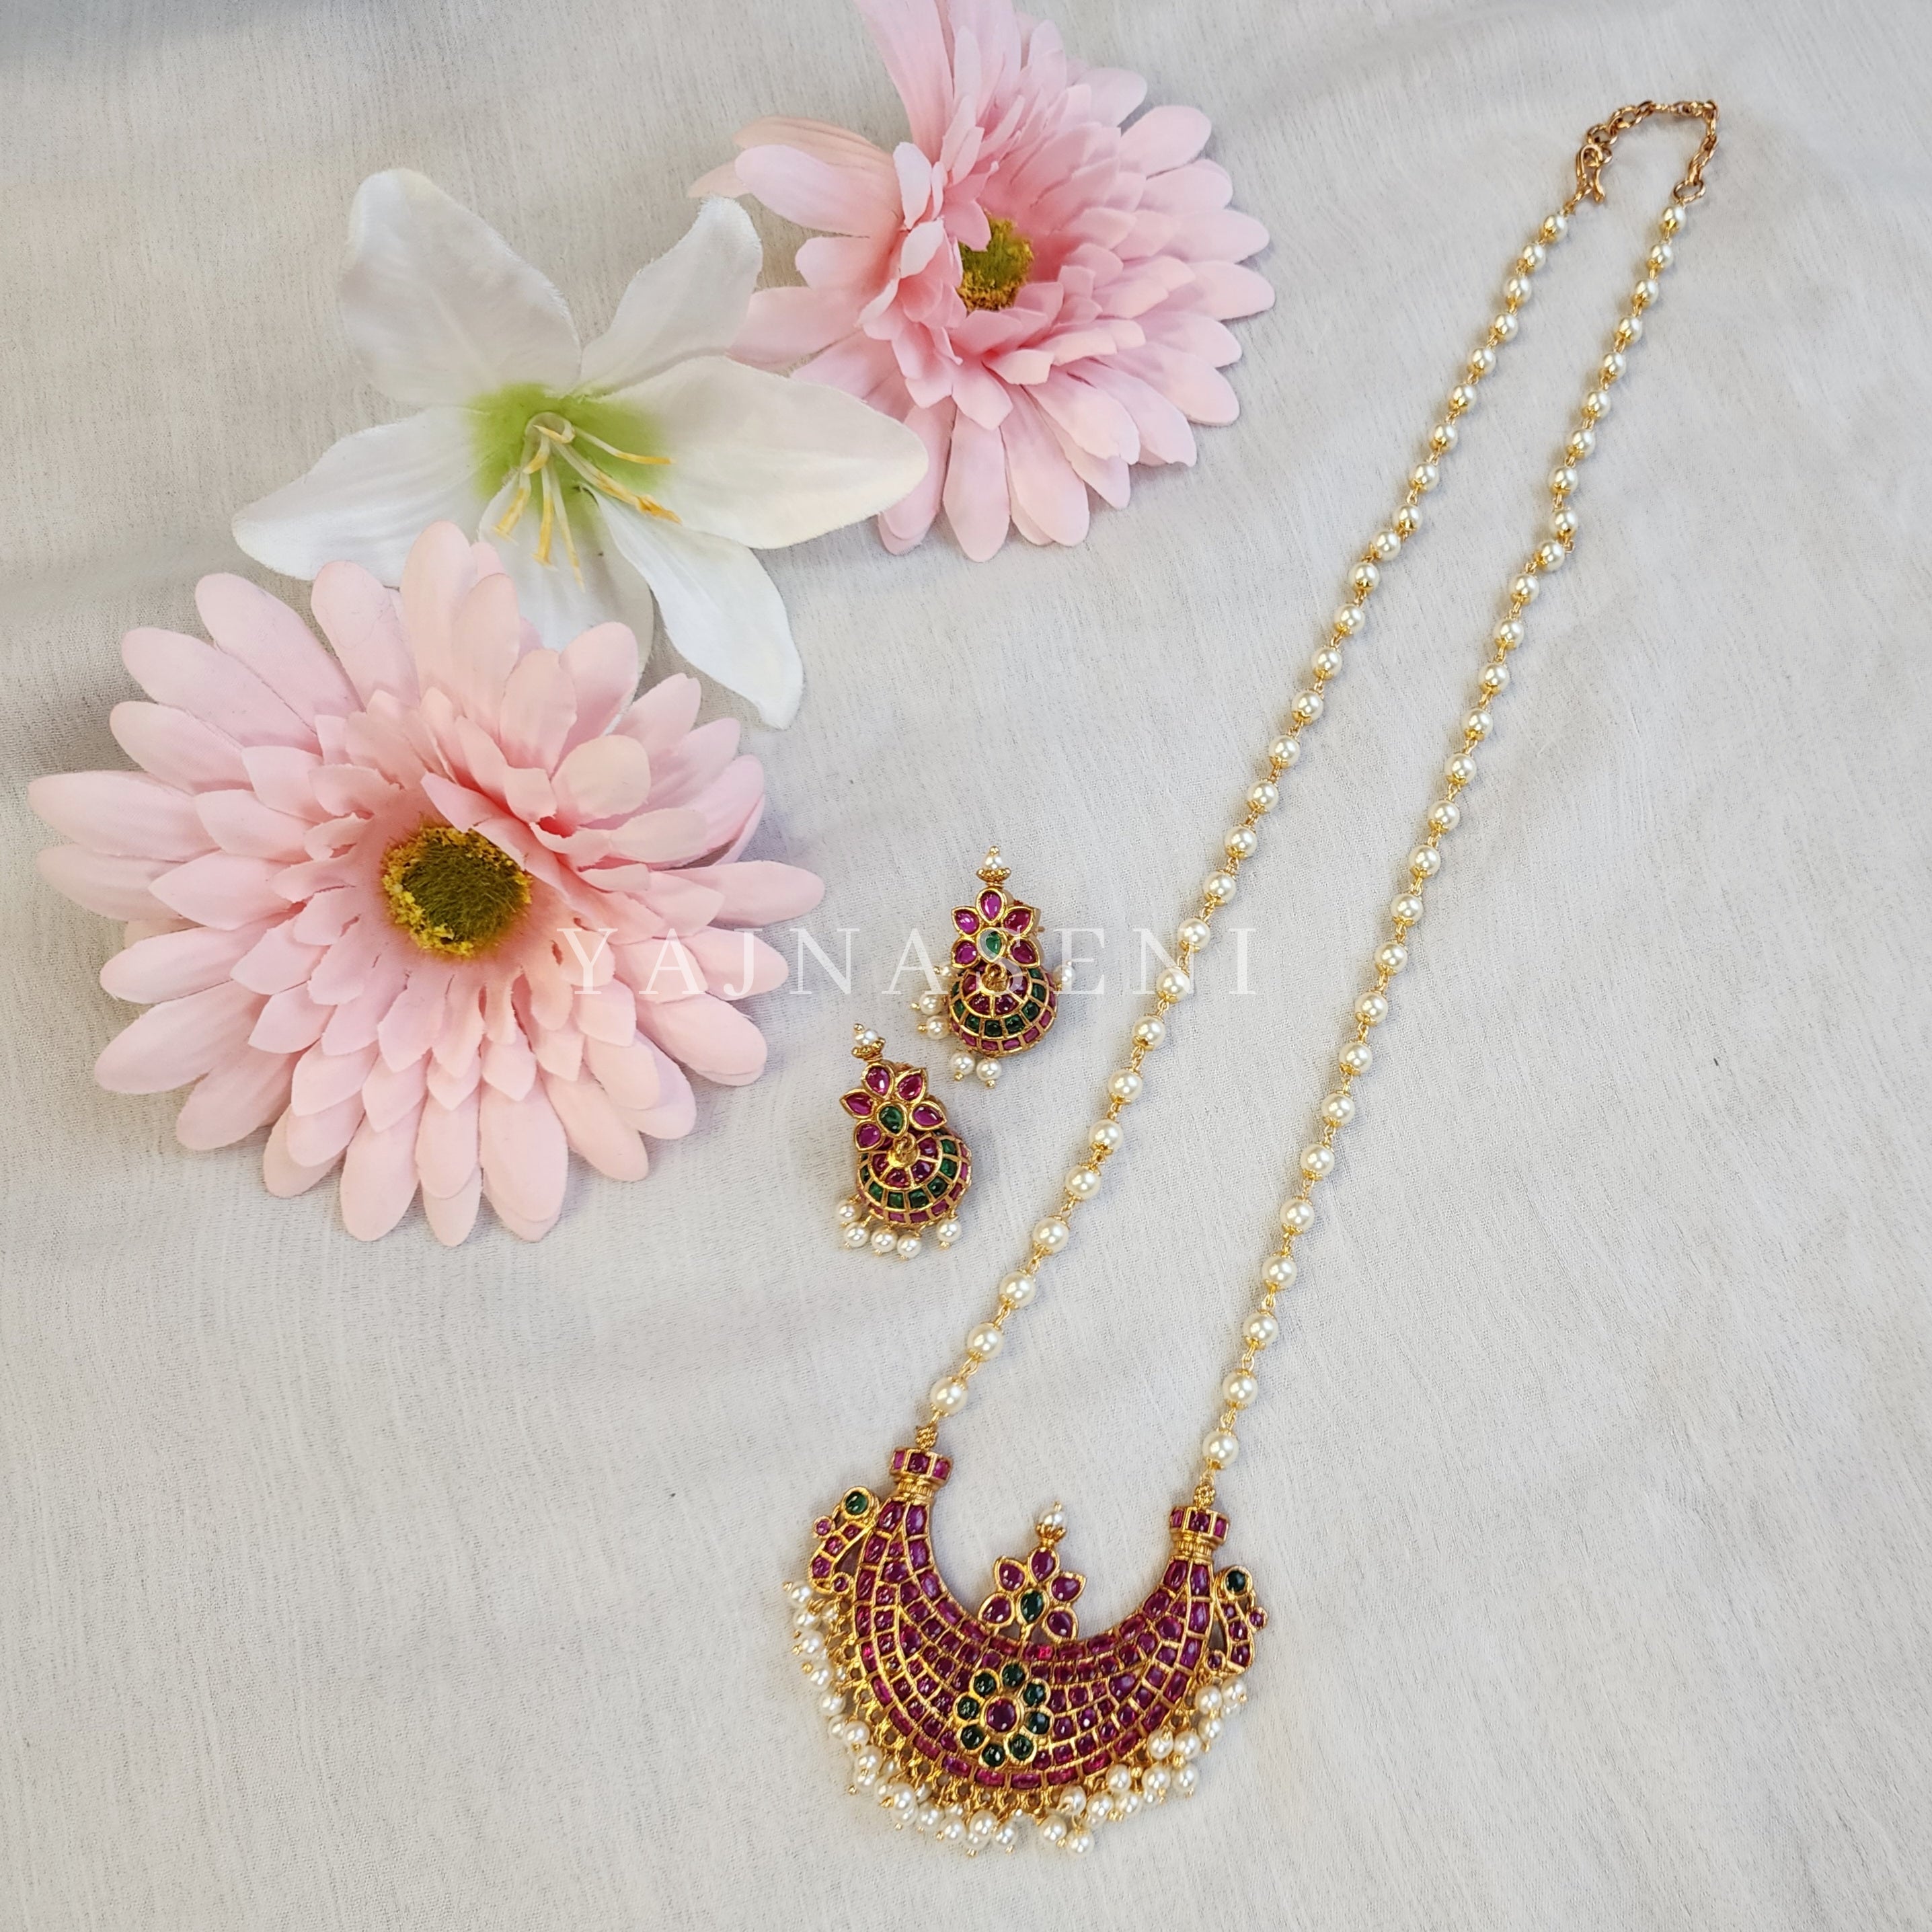 SAAVITHIRI (necklace)